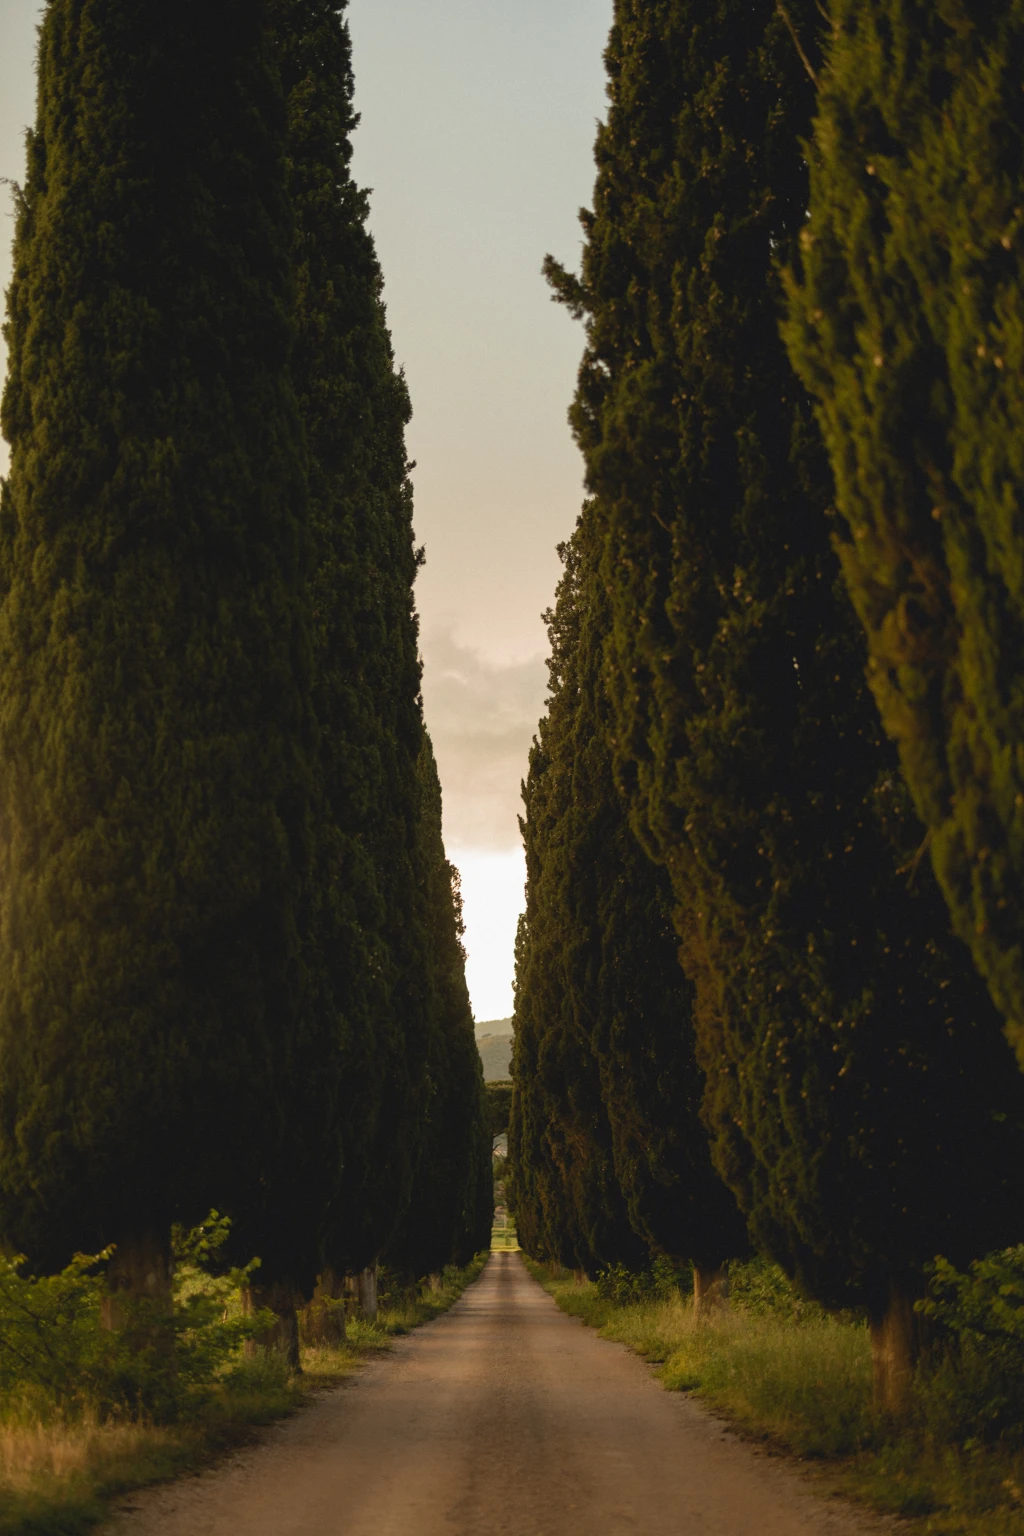 Tuscan Cypress Road near Cortona by Nastia Dolzhenytsia